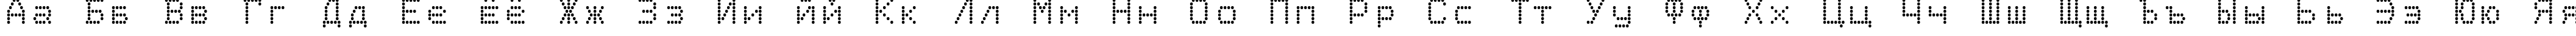 Пример написания русского алфавита шрифтом Epson1